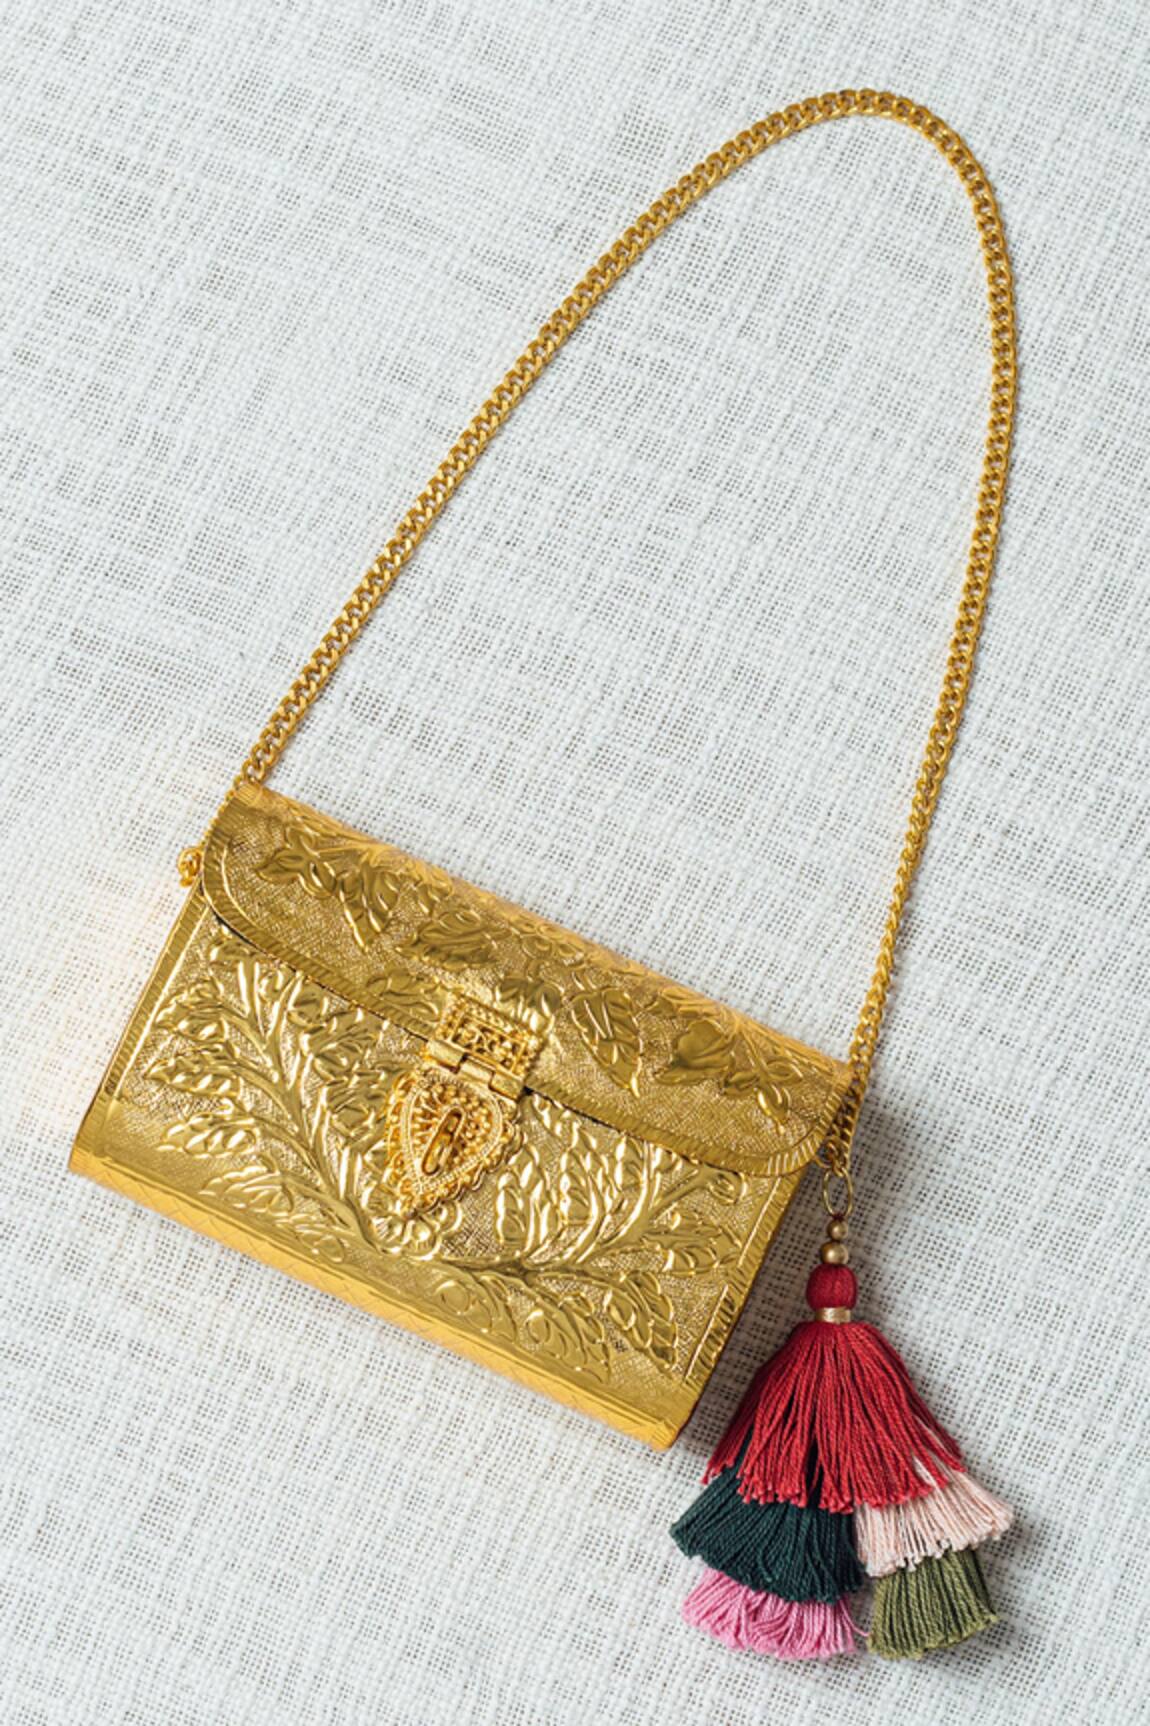 Deepika's Snakeskin Sling Bag To Alia's Gold Embossed Bag, Latest